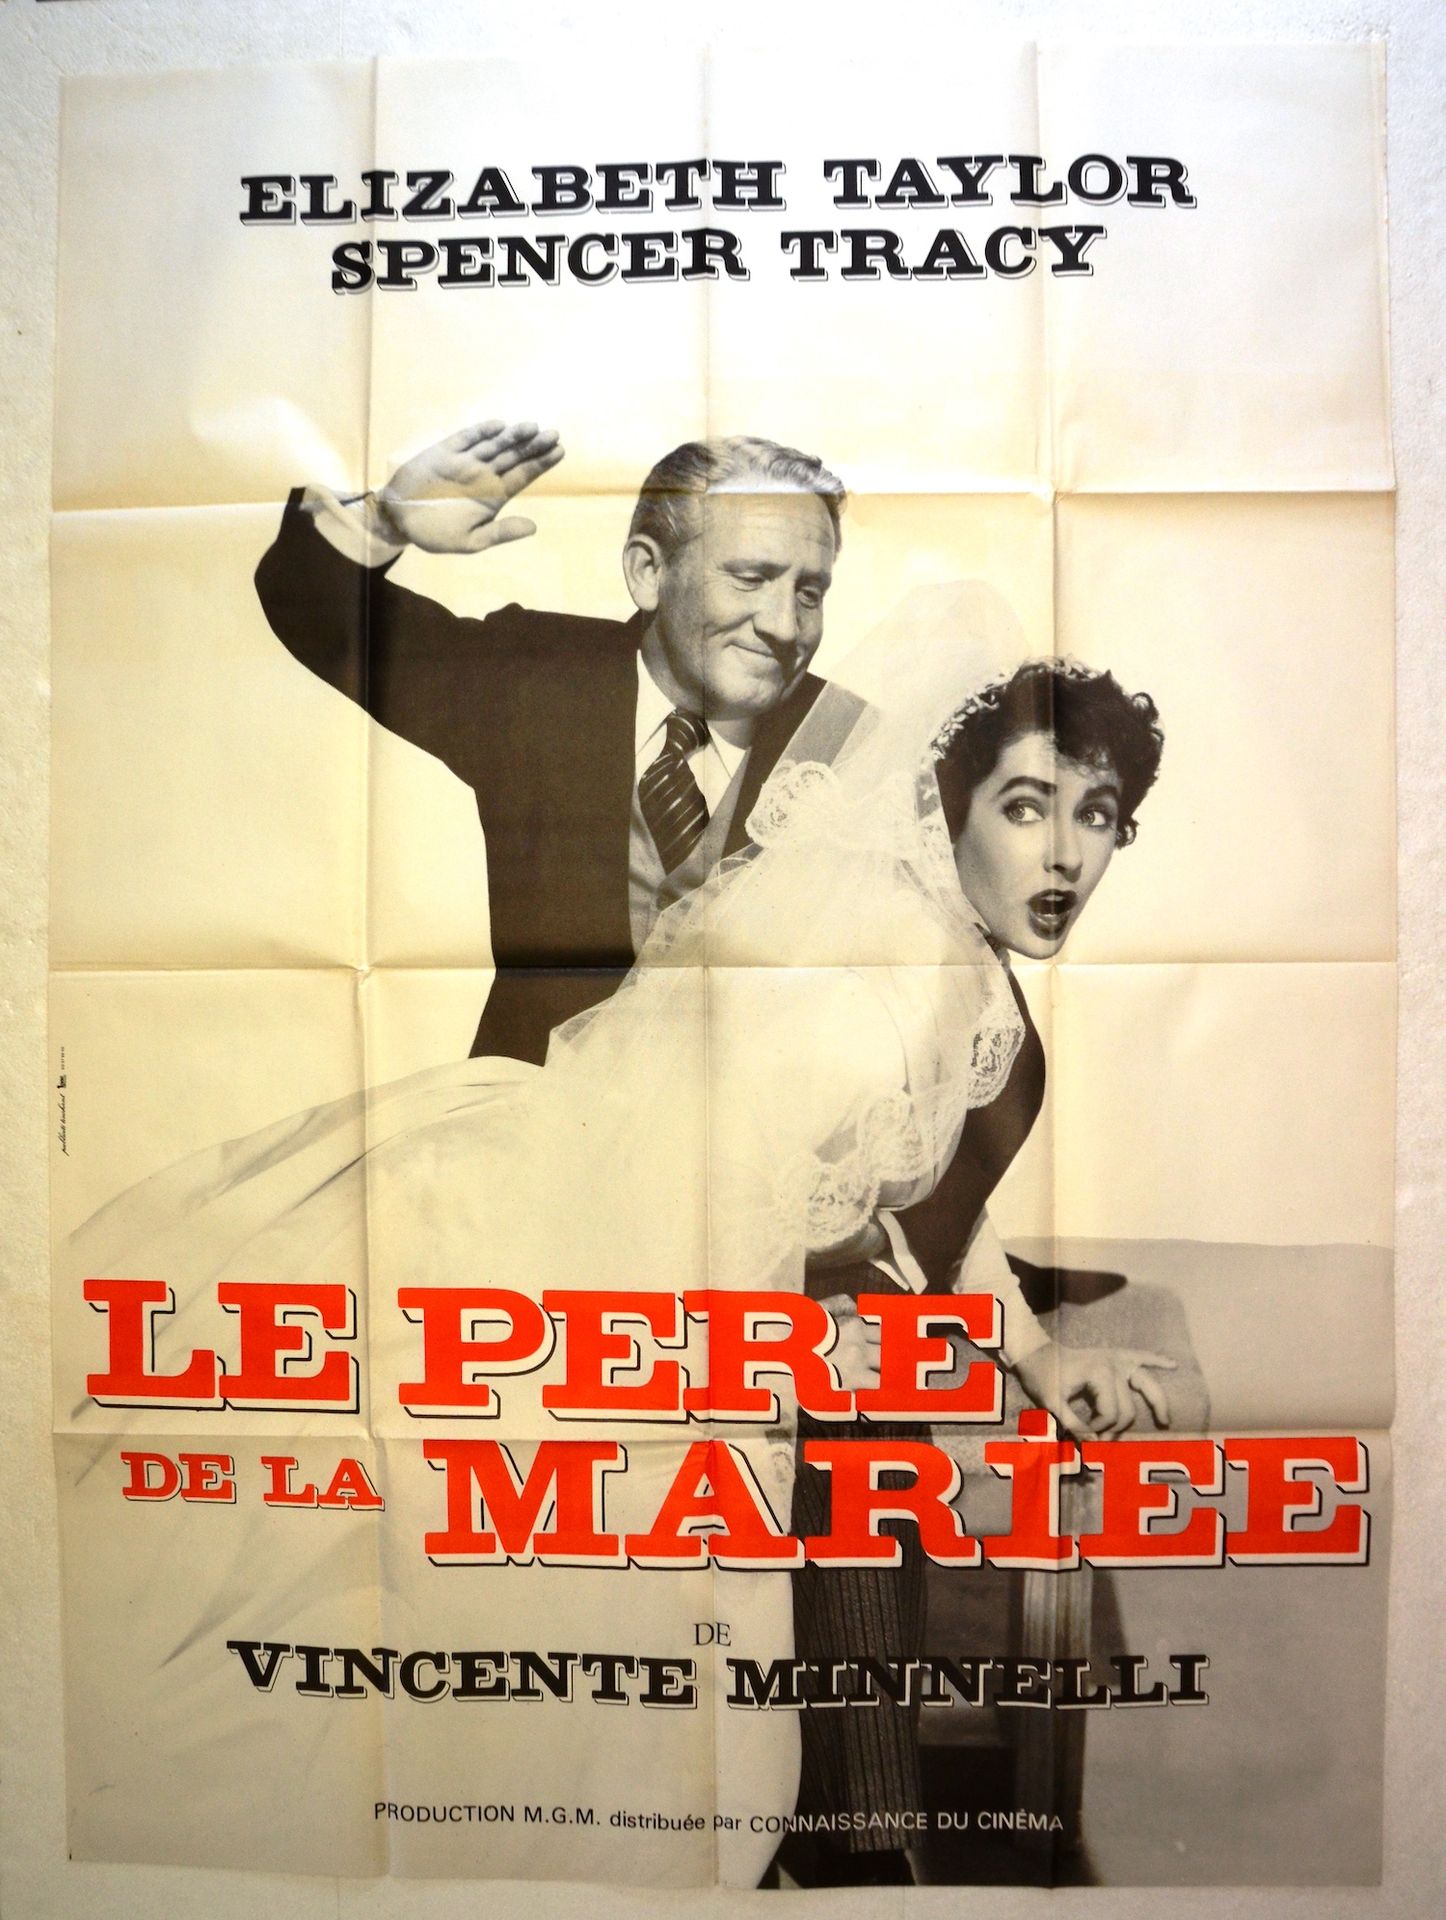 Null IL PADRE DELLA SPOSA
Anno: 1950, manifesto francese
Regia: Vincente Minnell&hellip;